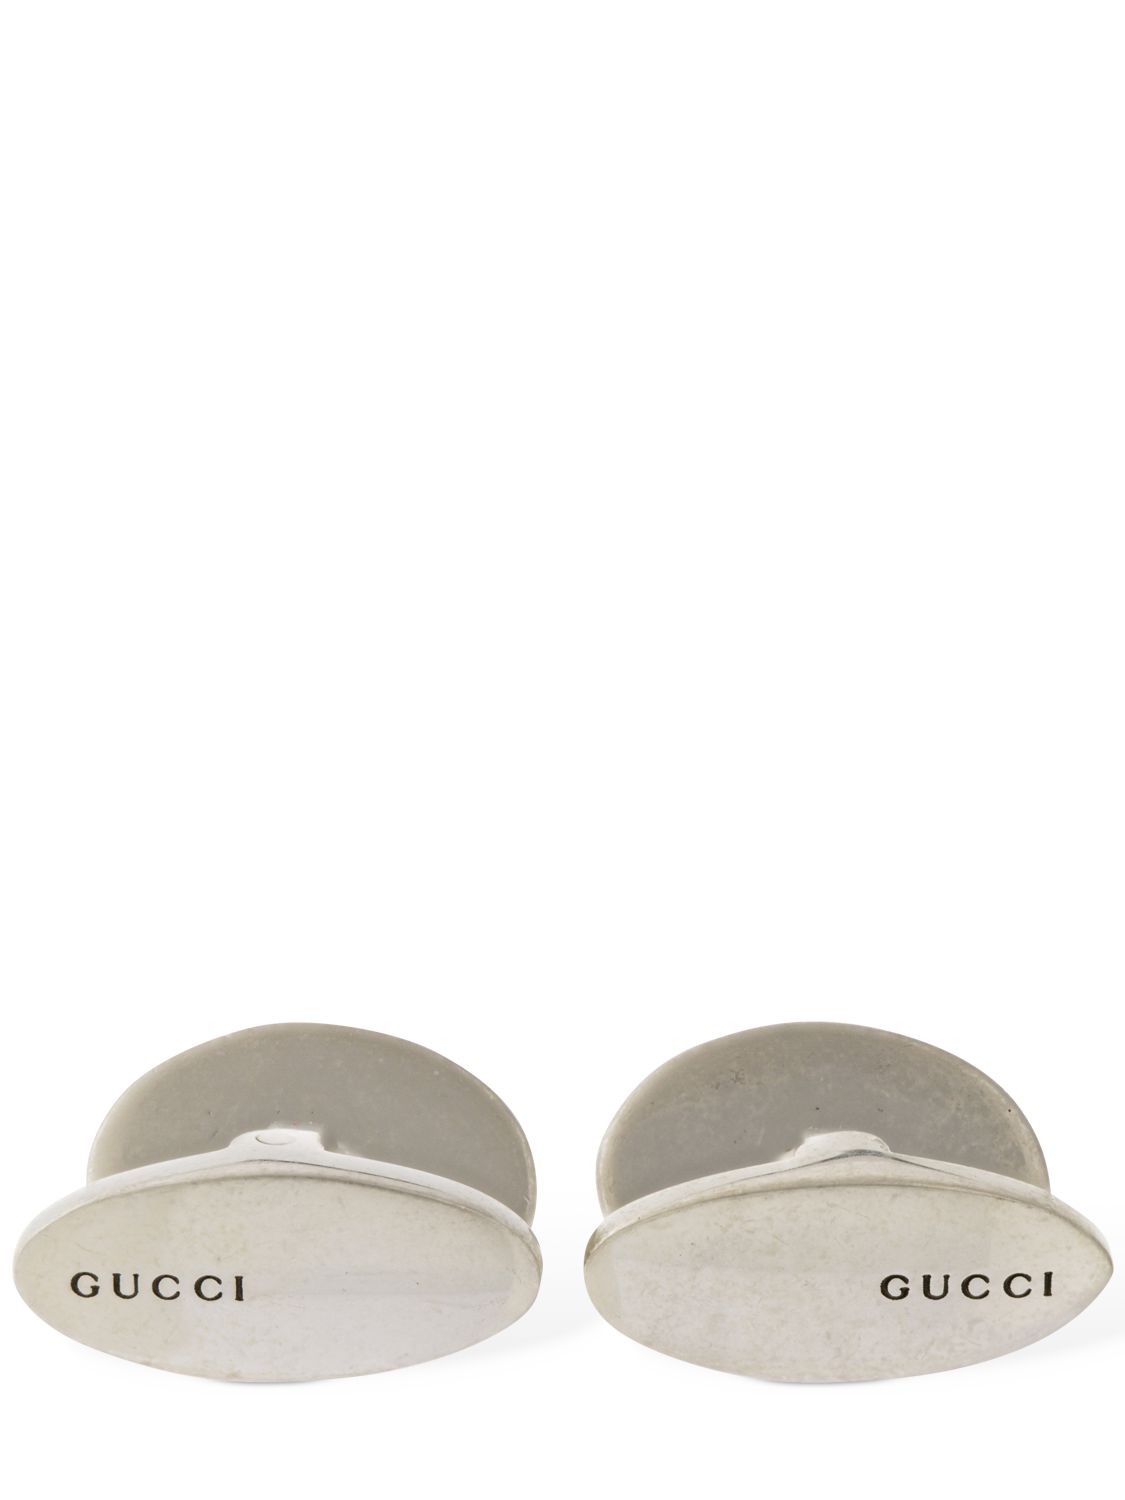  Gucci Interlocking G Enamel Cufflinks 